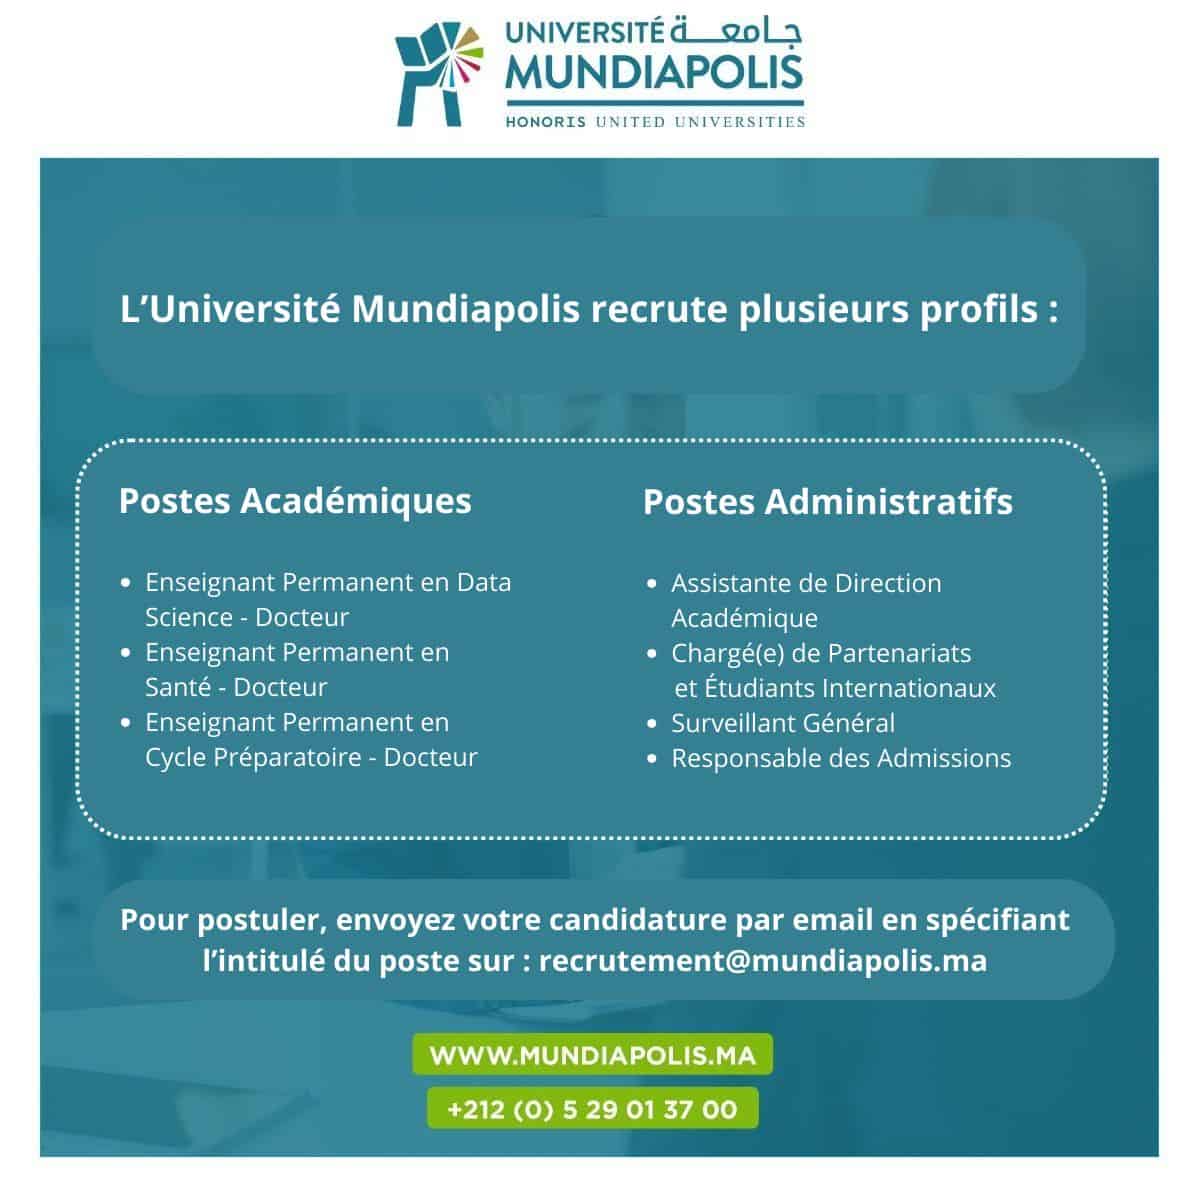 Université Mundiapolis recrute Plusieurs Profils Académiques et Administratifs